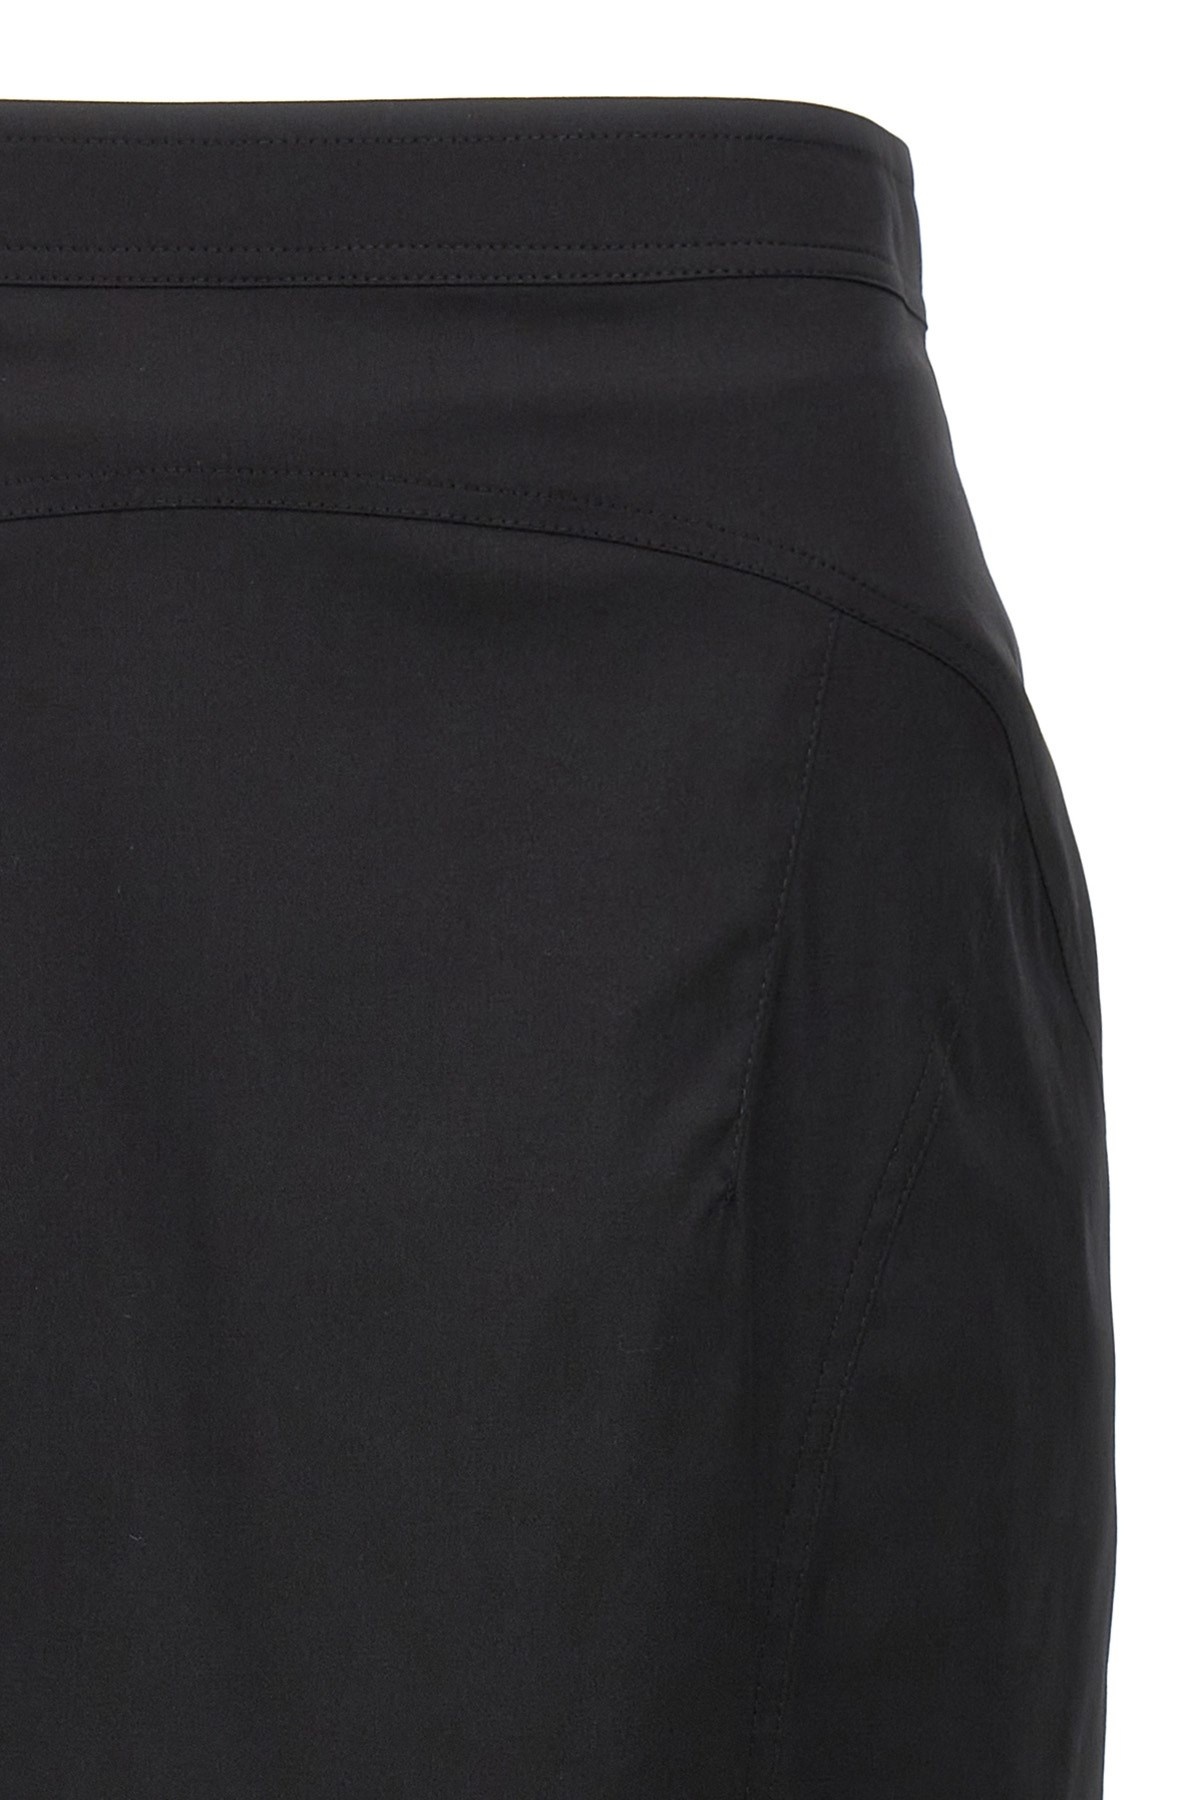 Longuette skirt - 3